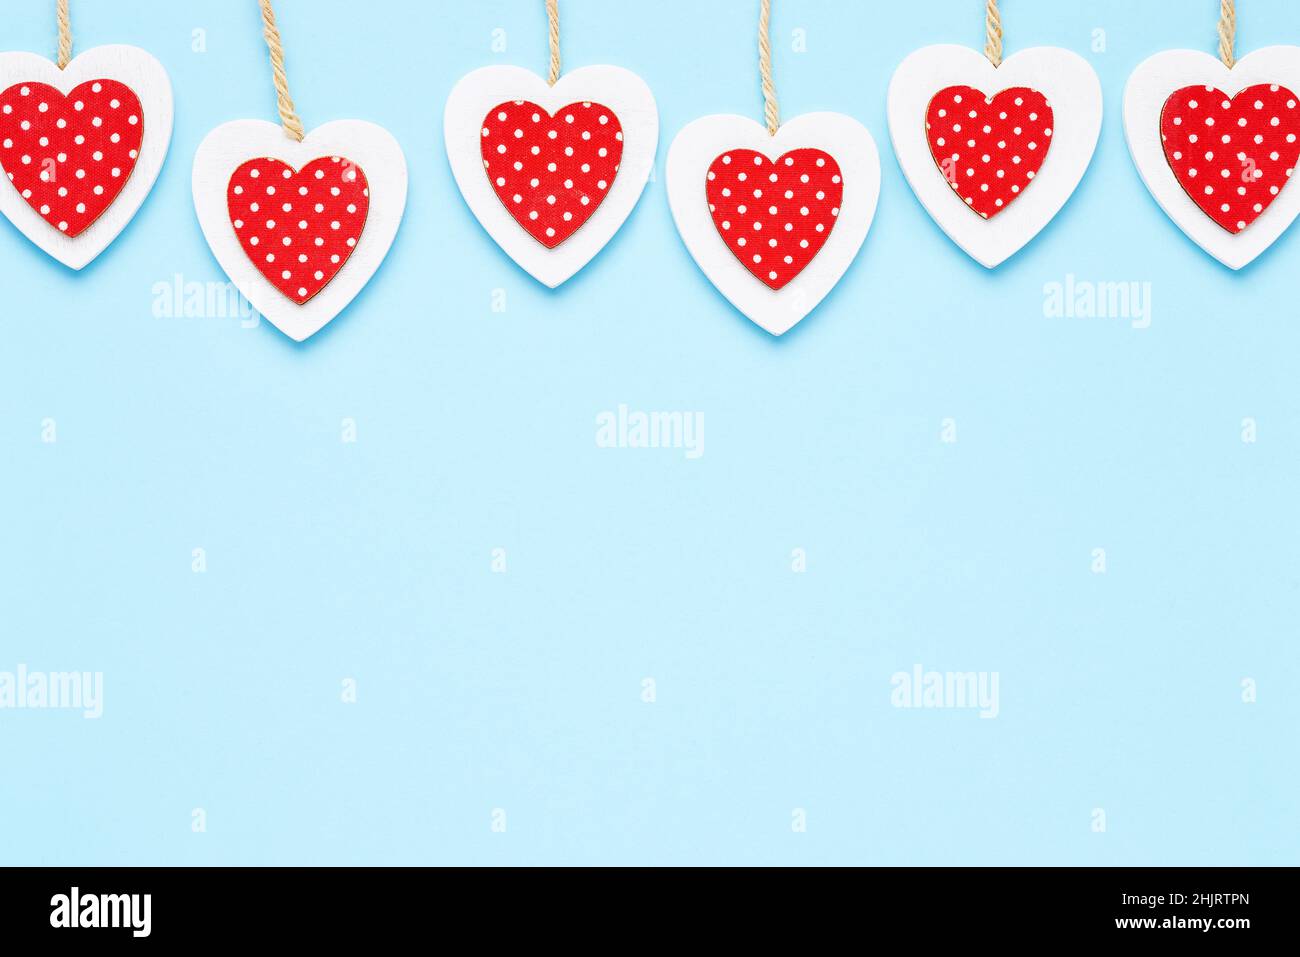 Valentinstag Hintergrund. Rot-weiße Holzherzen vor hellblauem Hintergrund. Flach liegend, Platz für Text kopieren Stockfoto